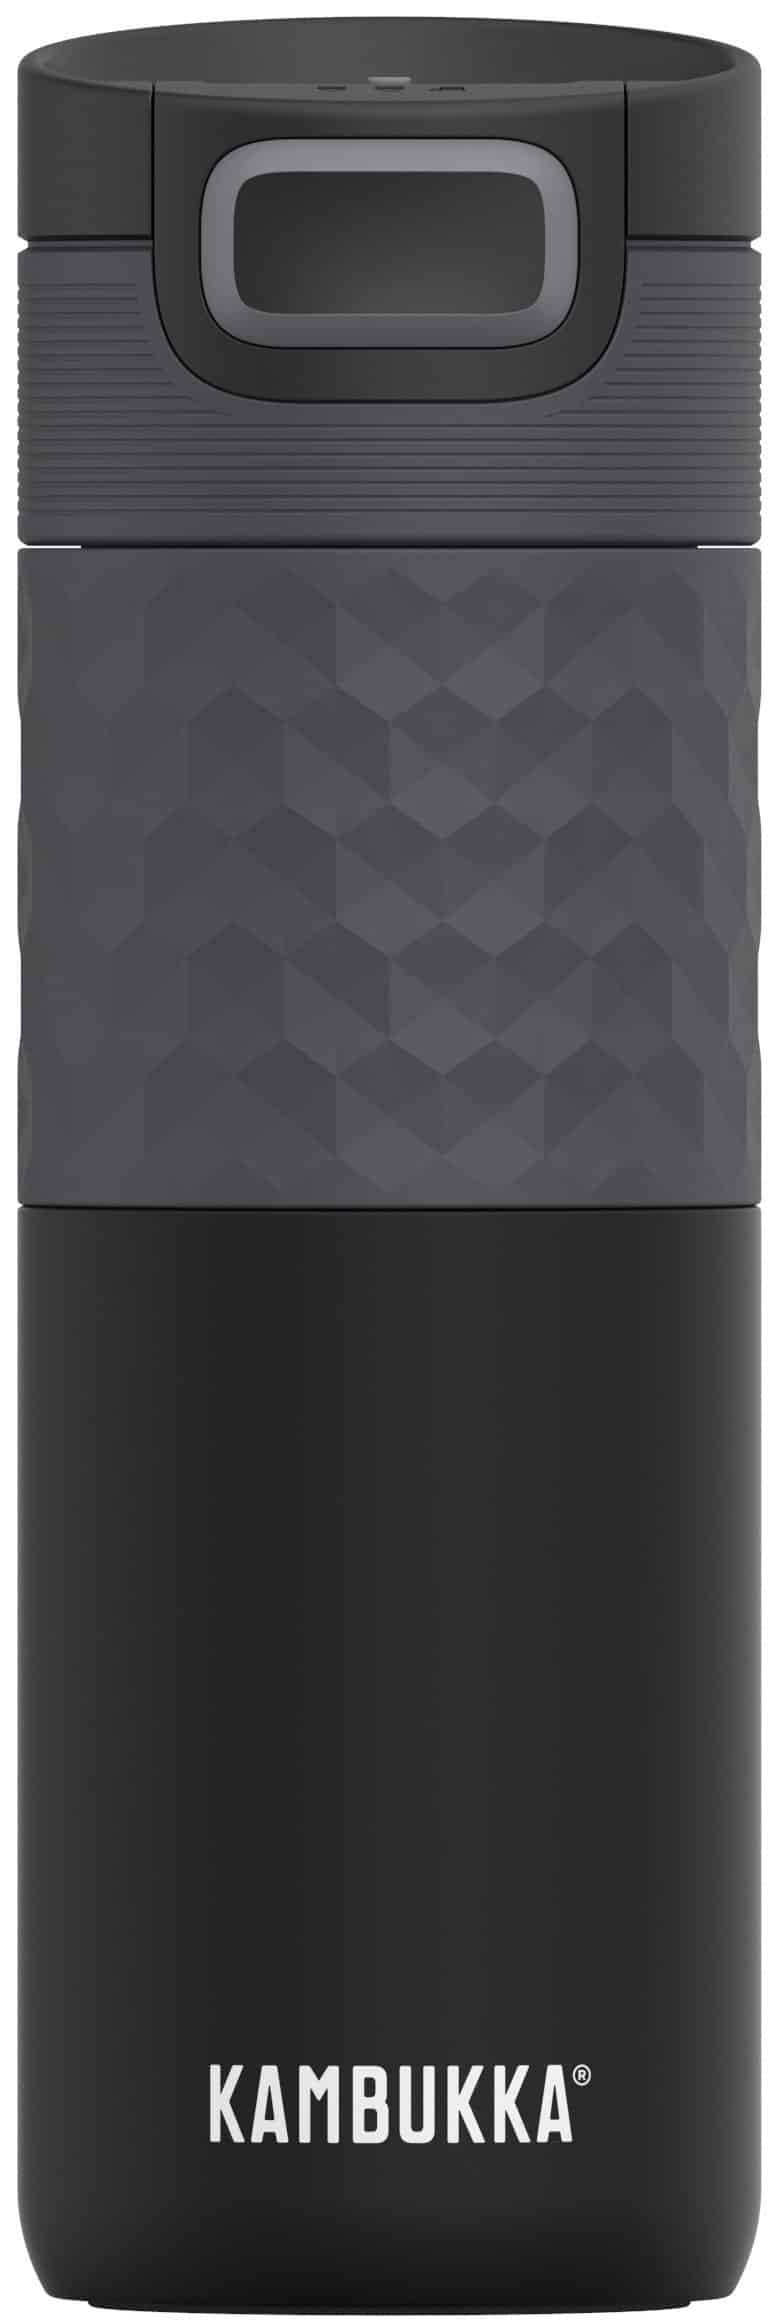 בקבוק שתיה תרמי שחור 500 מ”ל Black Steel קמבוקה￼ Kambukka Etna Grip